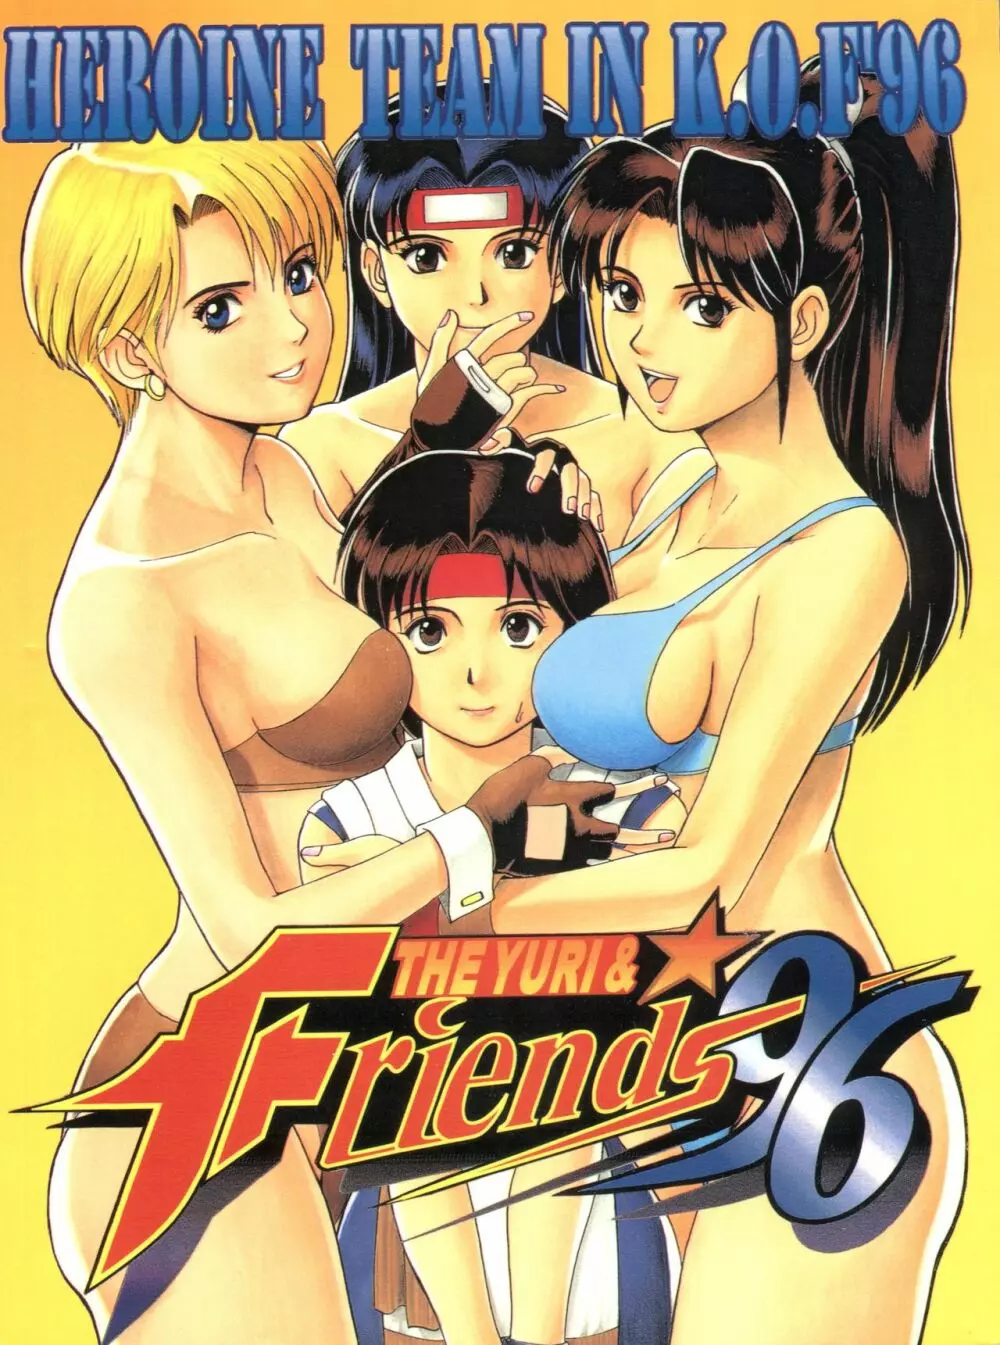 The Yuri&Friends '96